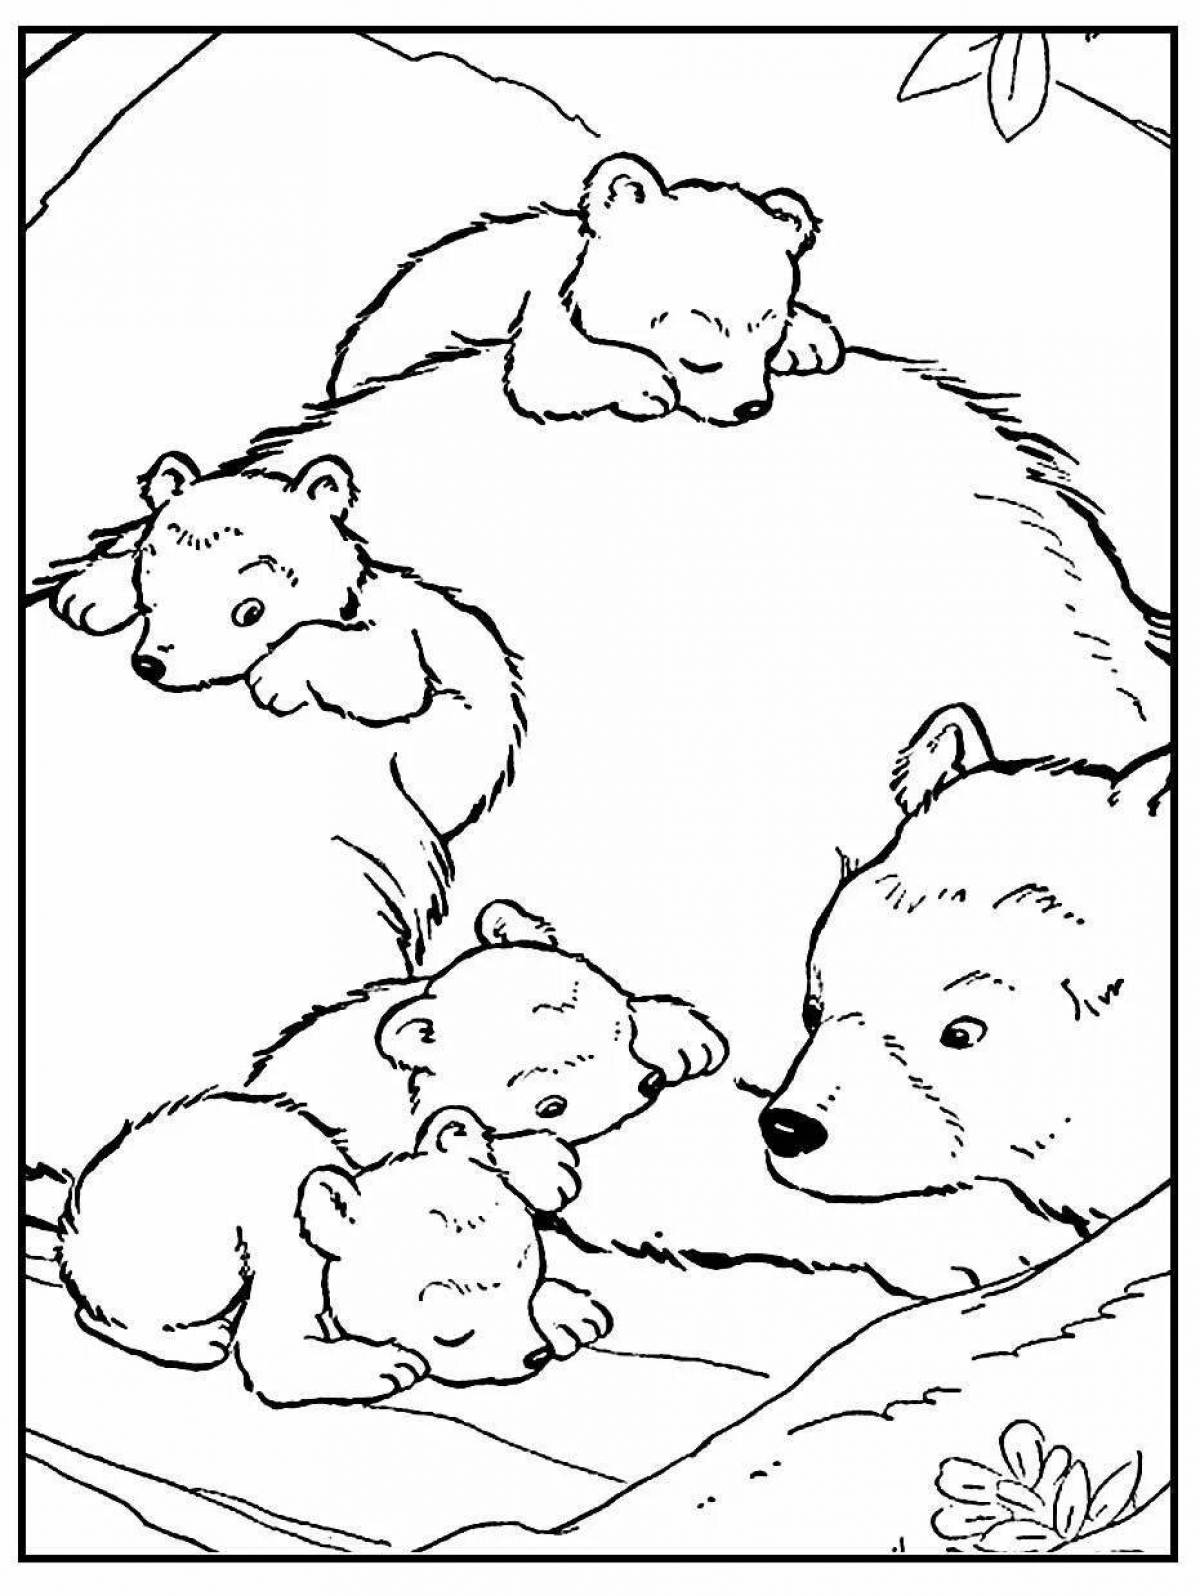 Раскраска семья улыбающихся медведей